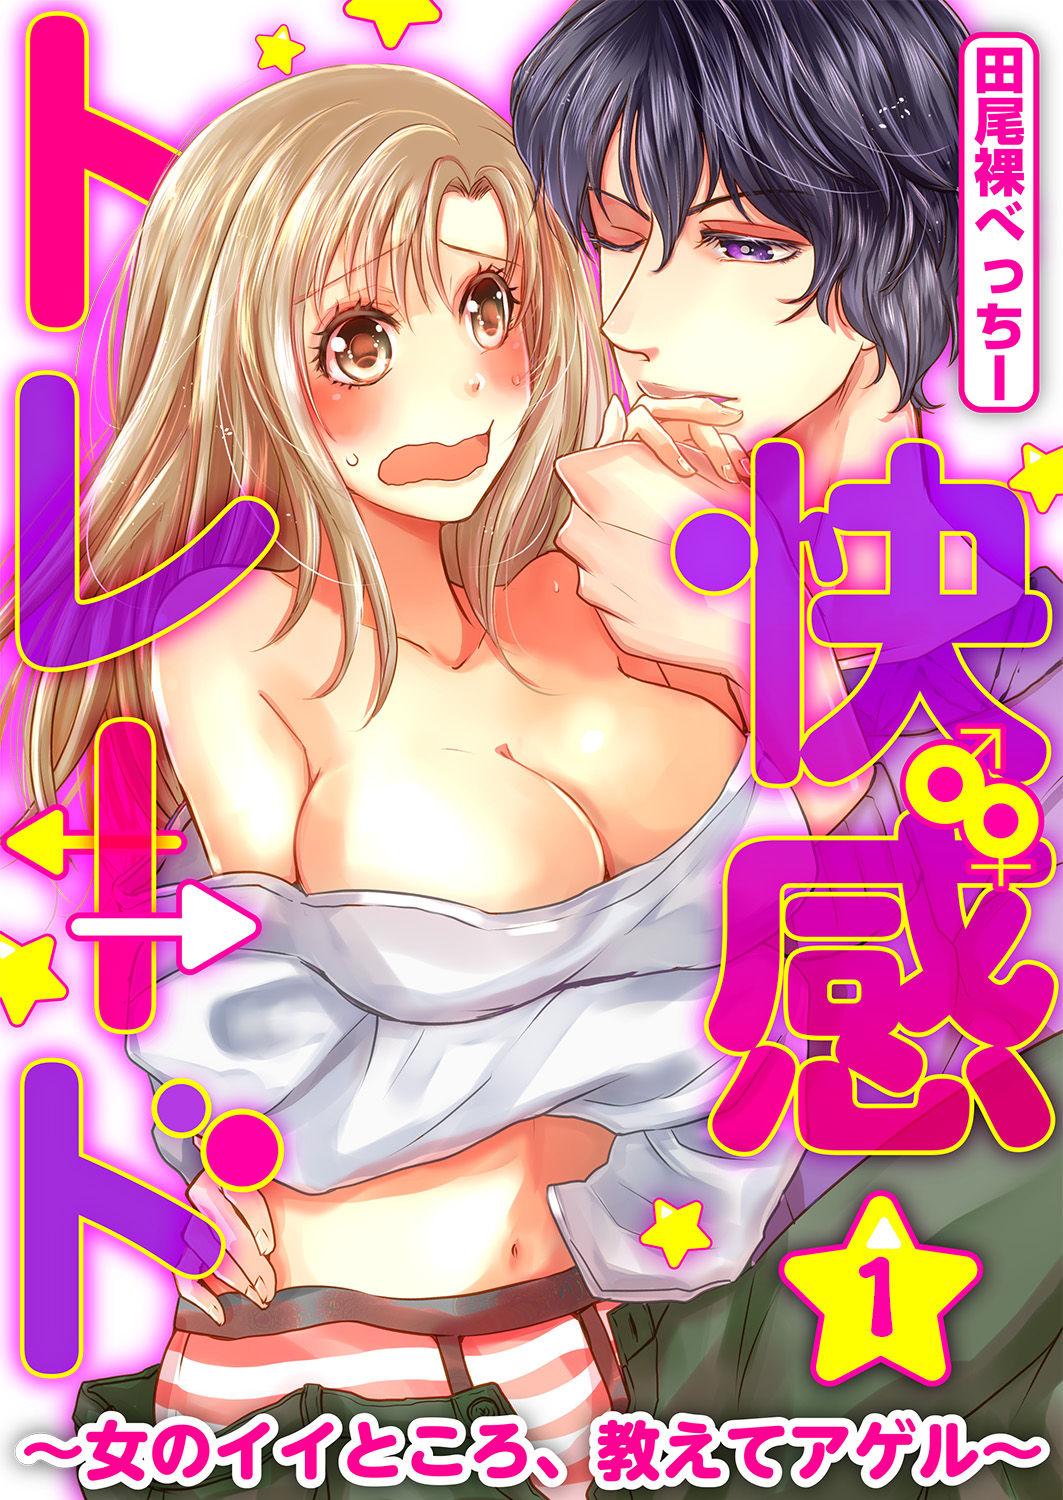 Slut Kaian★Trade~Onnna no ii tokoro, oshiete ageru~volume 1 Teensex - Picture 1